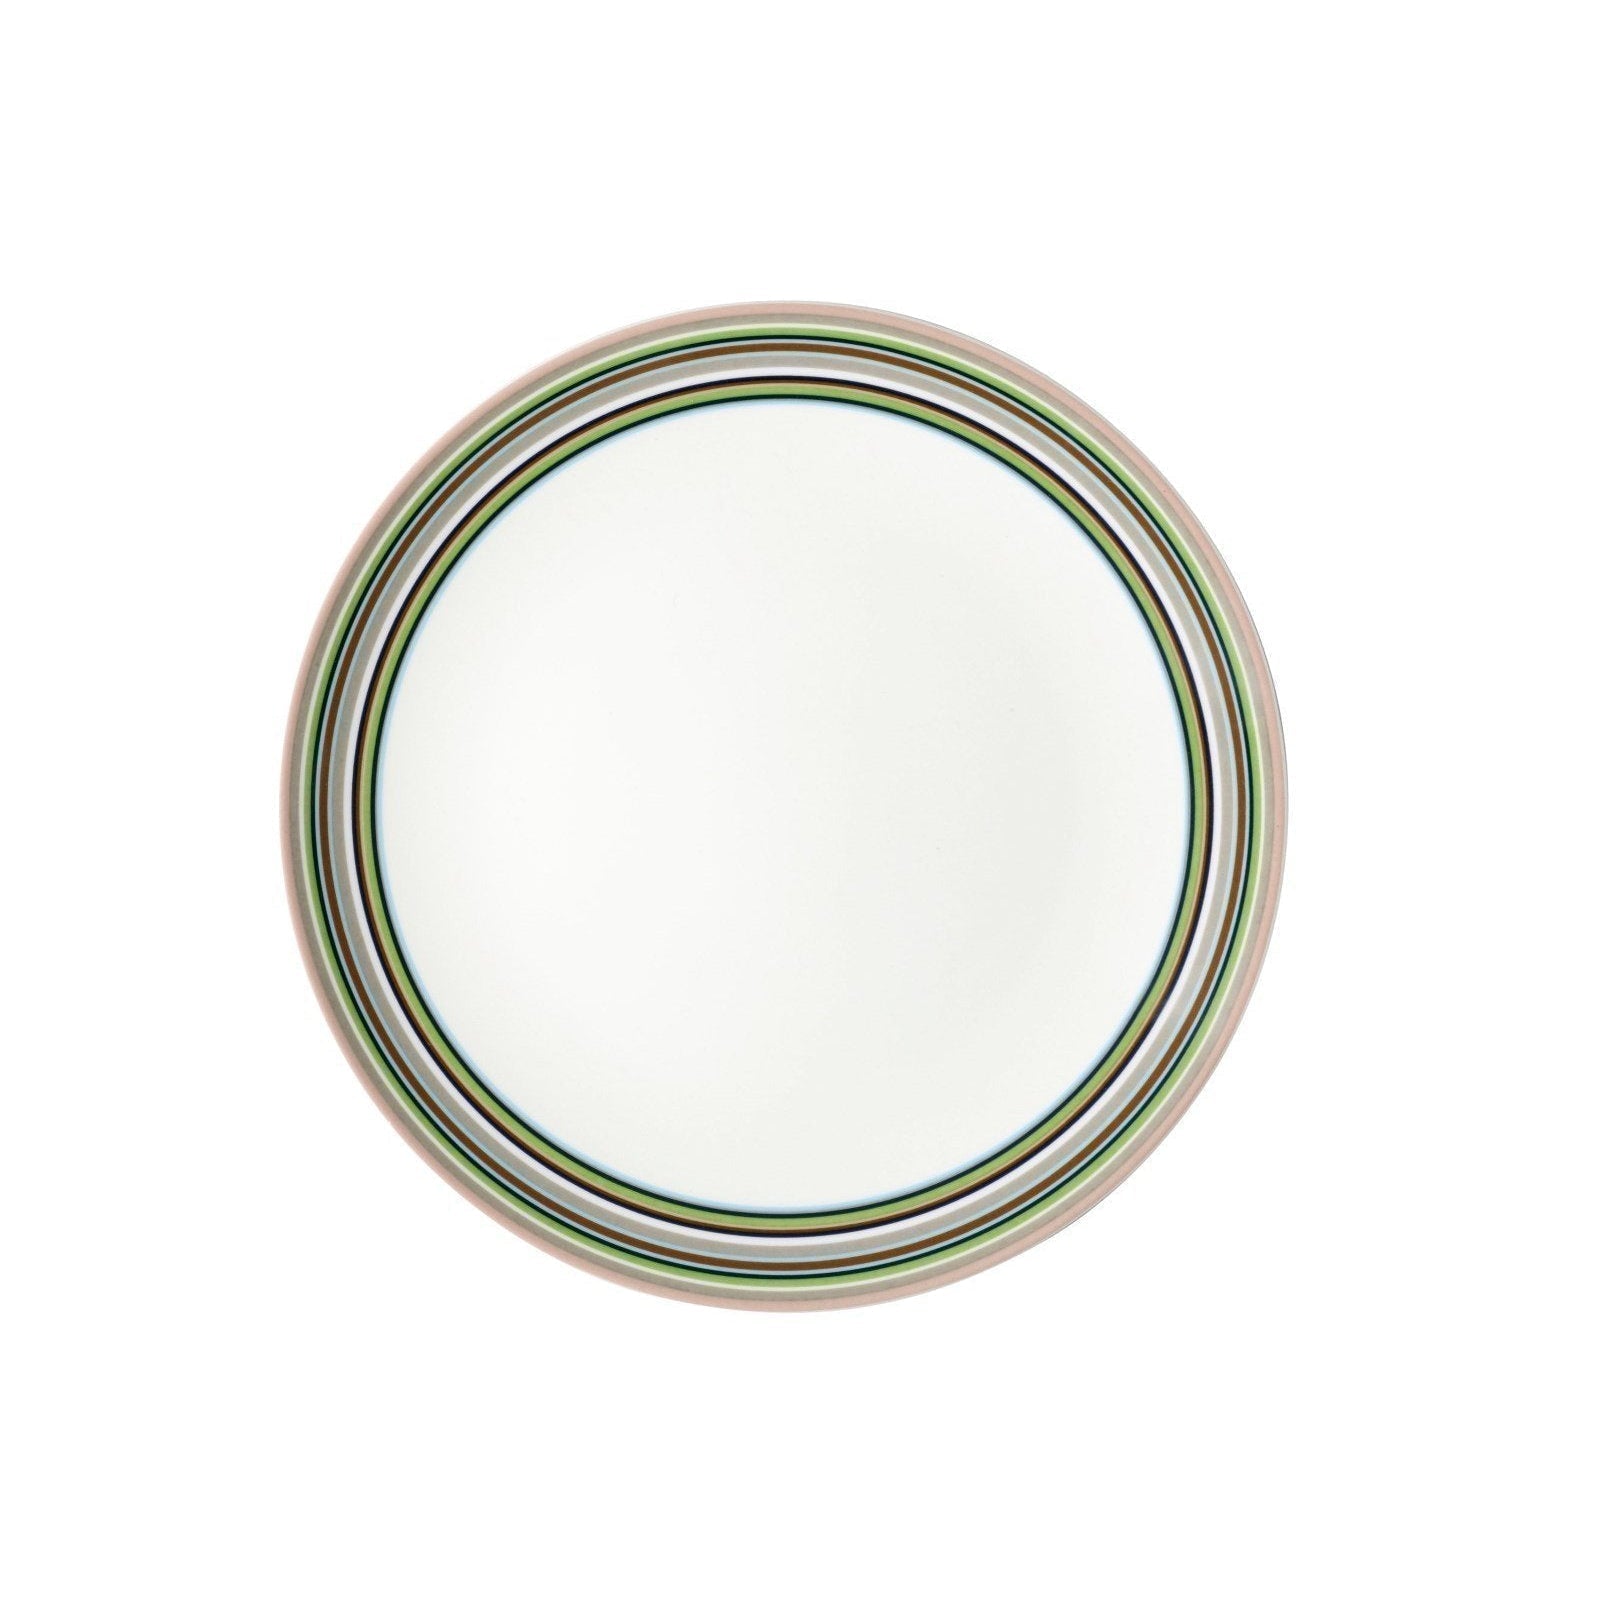 Iittala Plaque d'origine beige plate, Ø26 cm